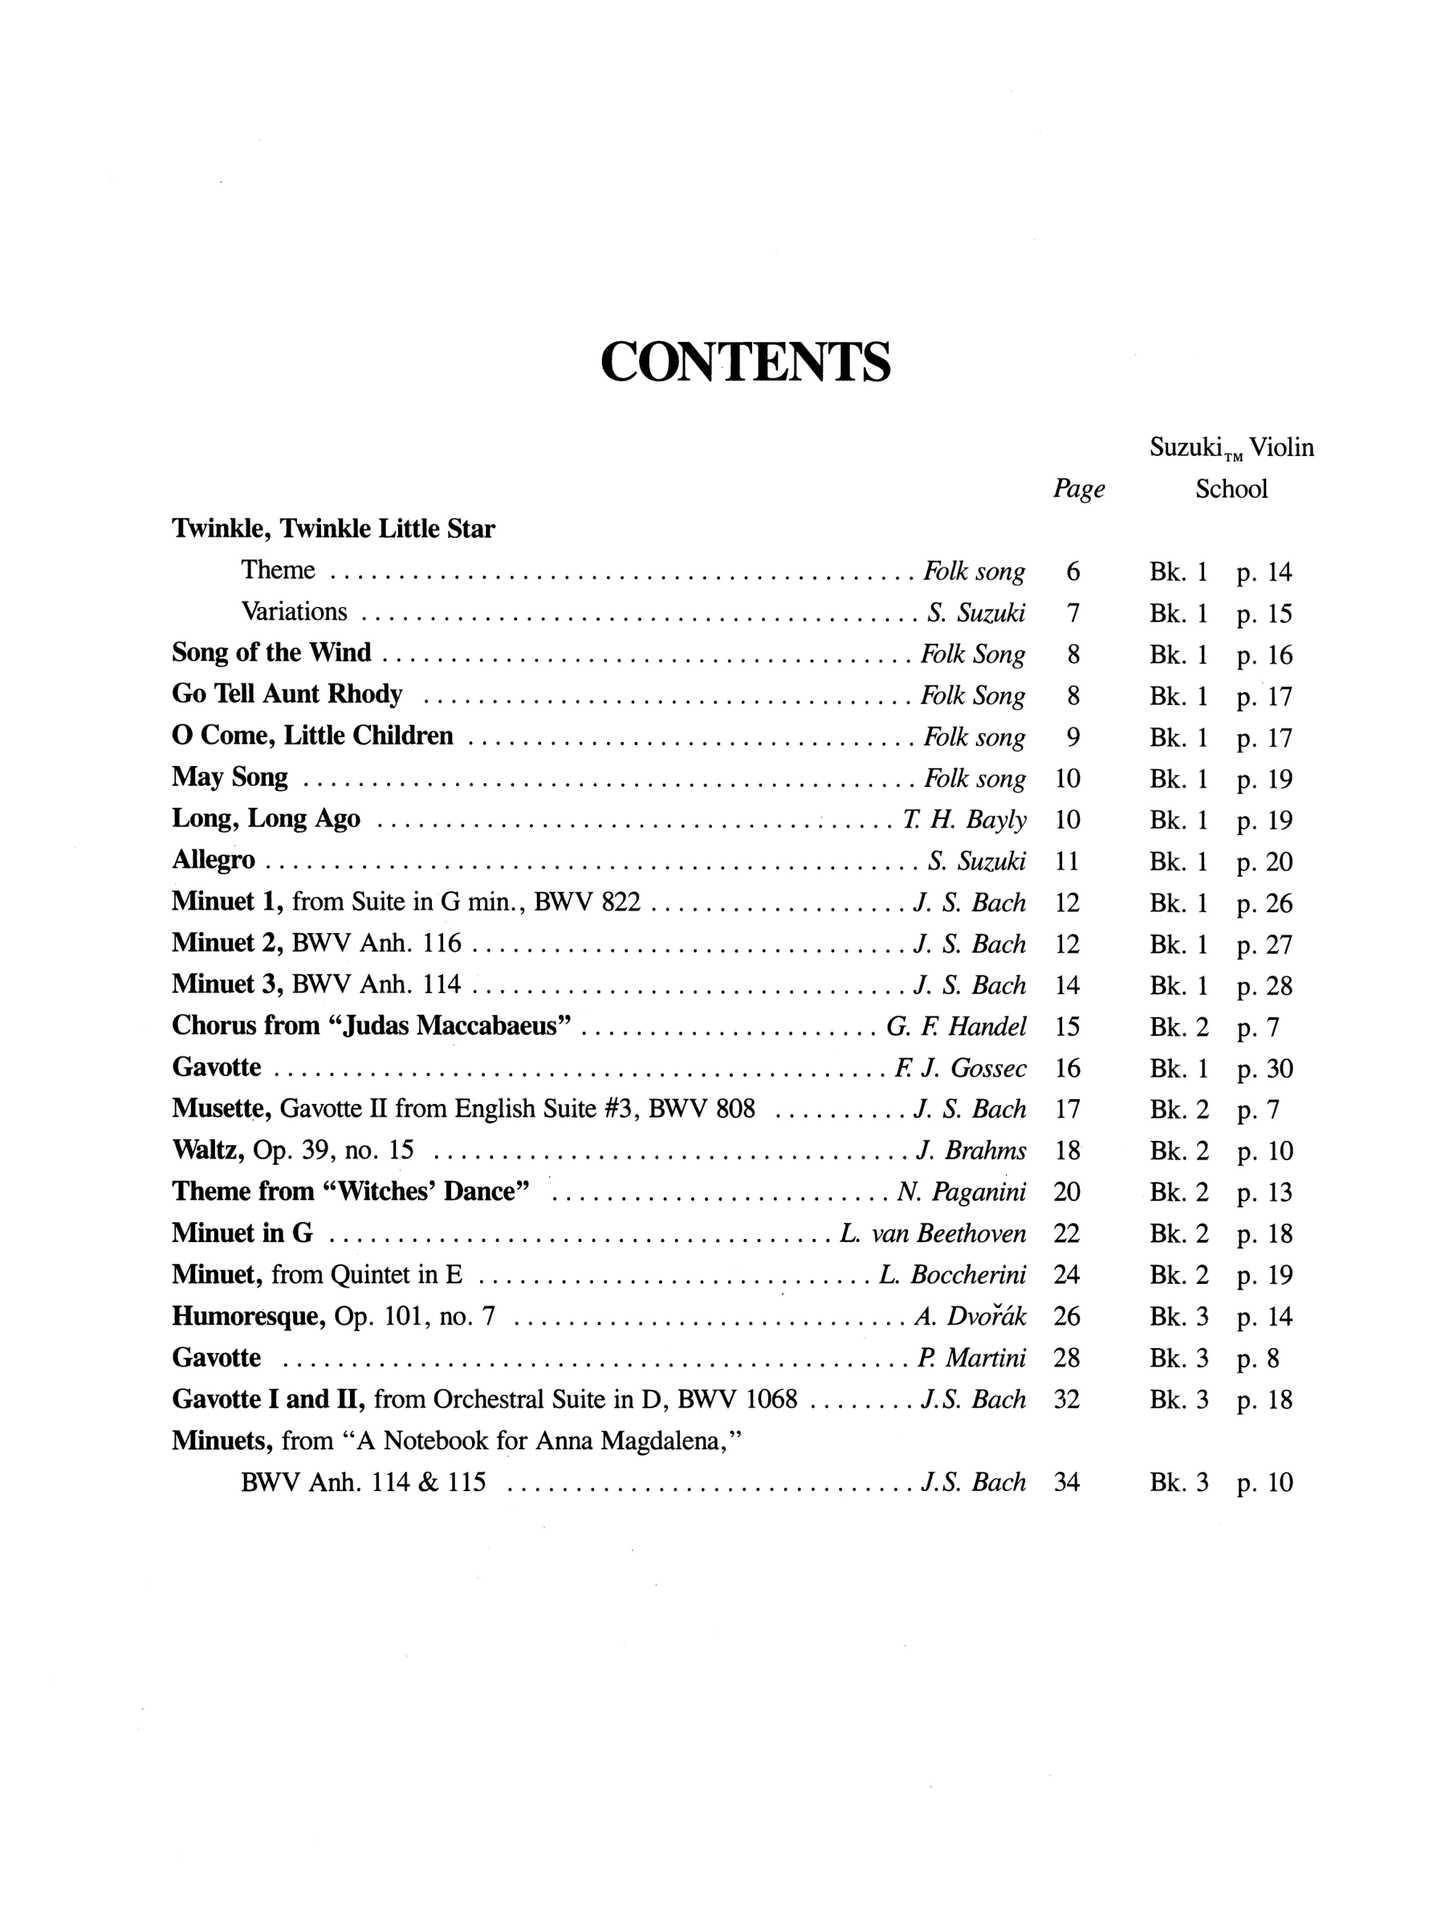 Suzuki Violin School - 21 Pieces For Violin With Guitar Book